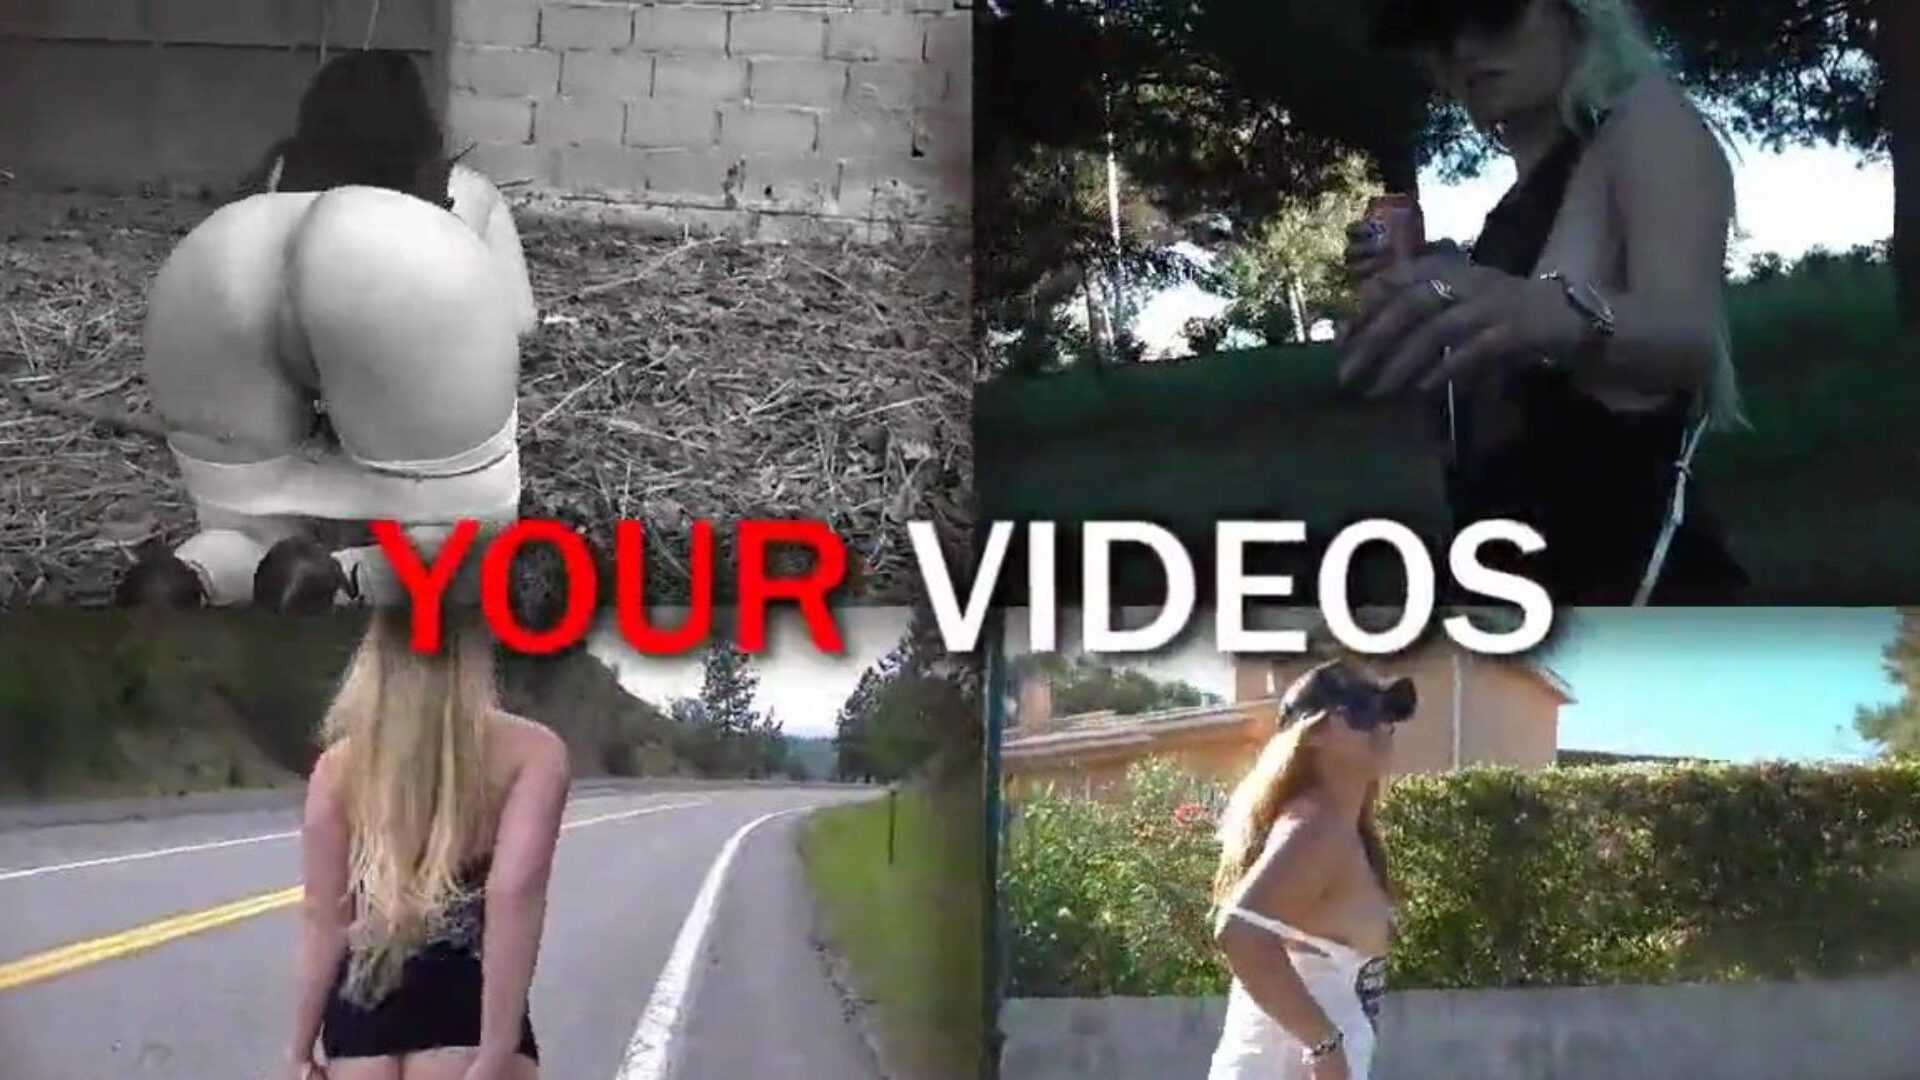 άφησα έναν ξένο να μασάζ με και να με δακτυλογραφήσει: δωρεάν hd porn 91 να παρακολουθήσω να αφήσω έναν ξένο να με μασάζ και να με δακτυλογραφεί βίντεο στο xhamster - το απόλυτο αρχείο της δωρεάν ταινίας αγάπης & xxx tube μασάζ ταινίες hd porn tube